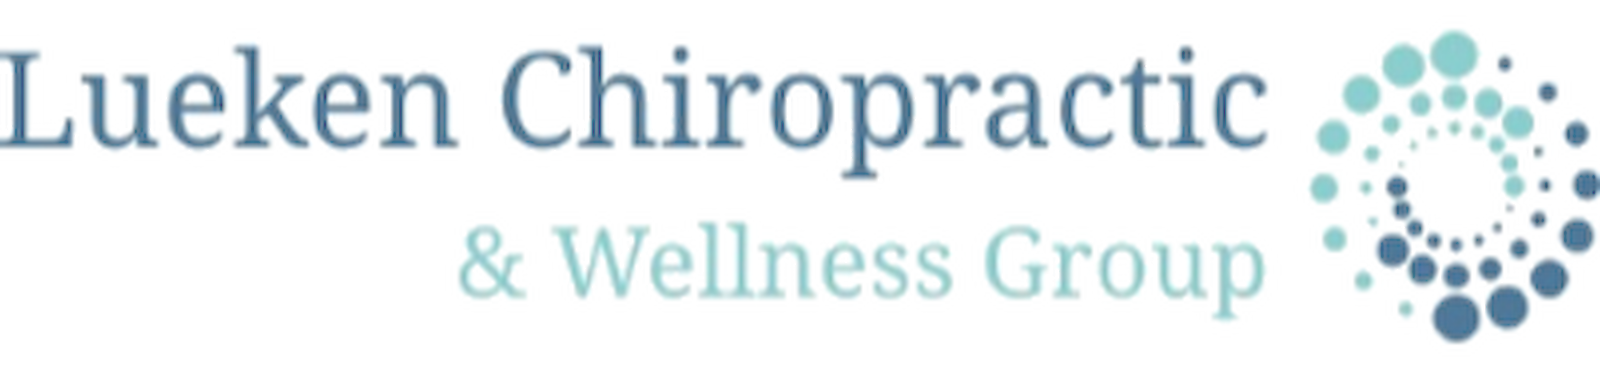 Lueken chiropractic and wellness